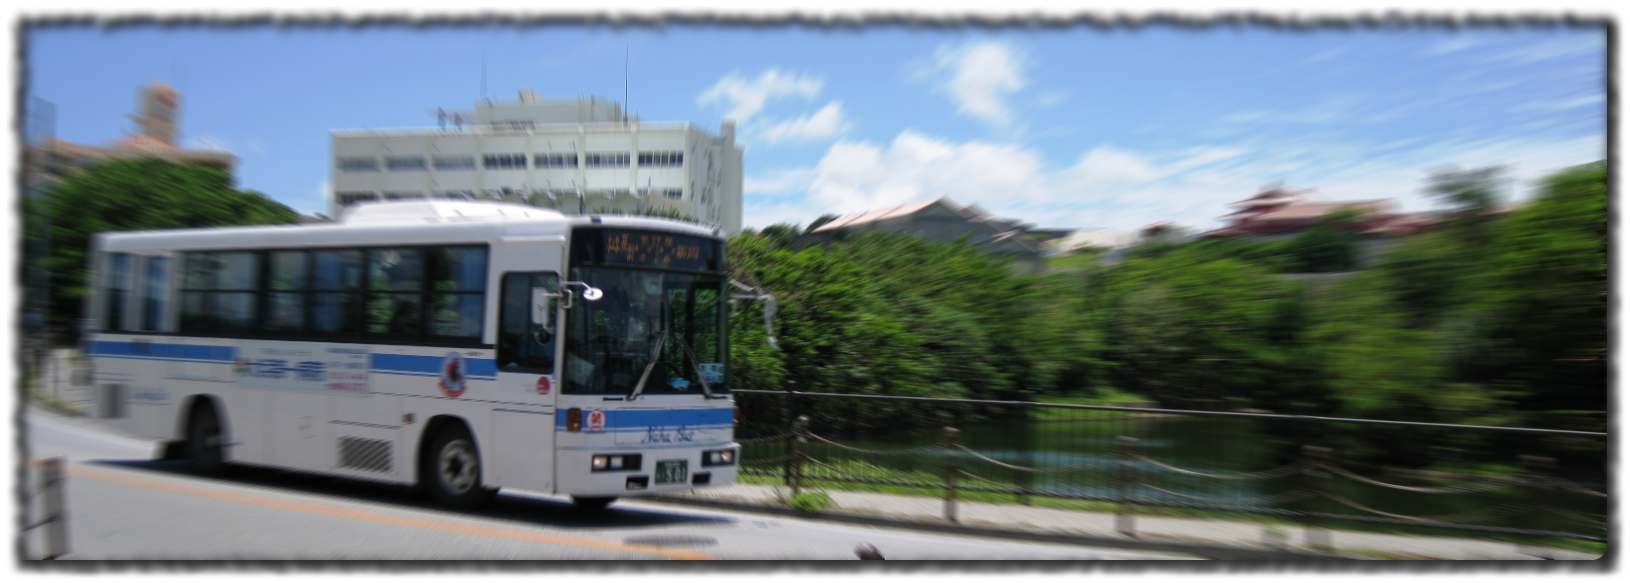 琉潭池を走るバス